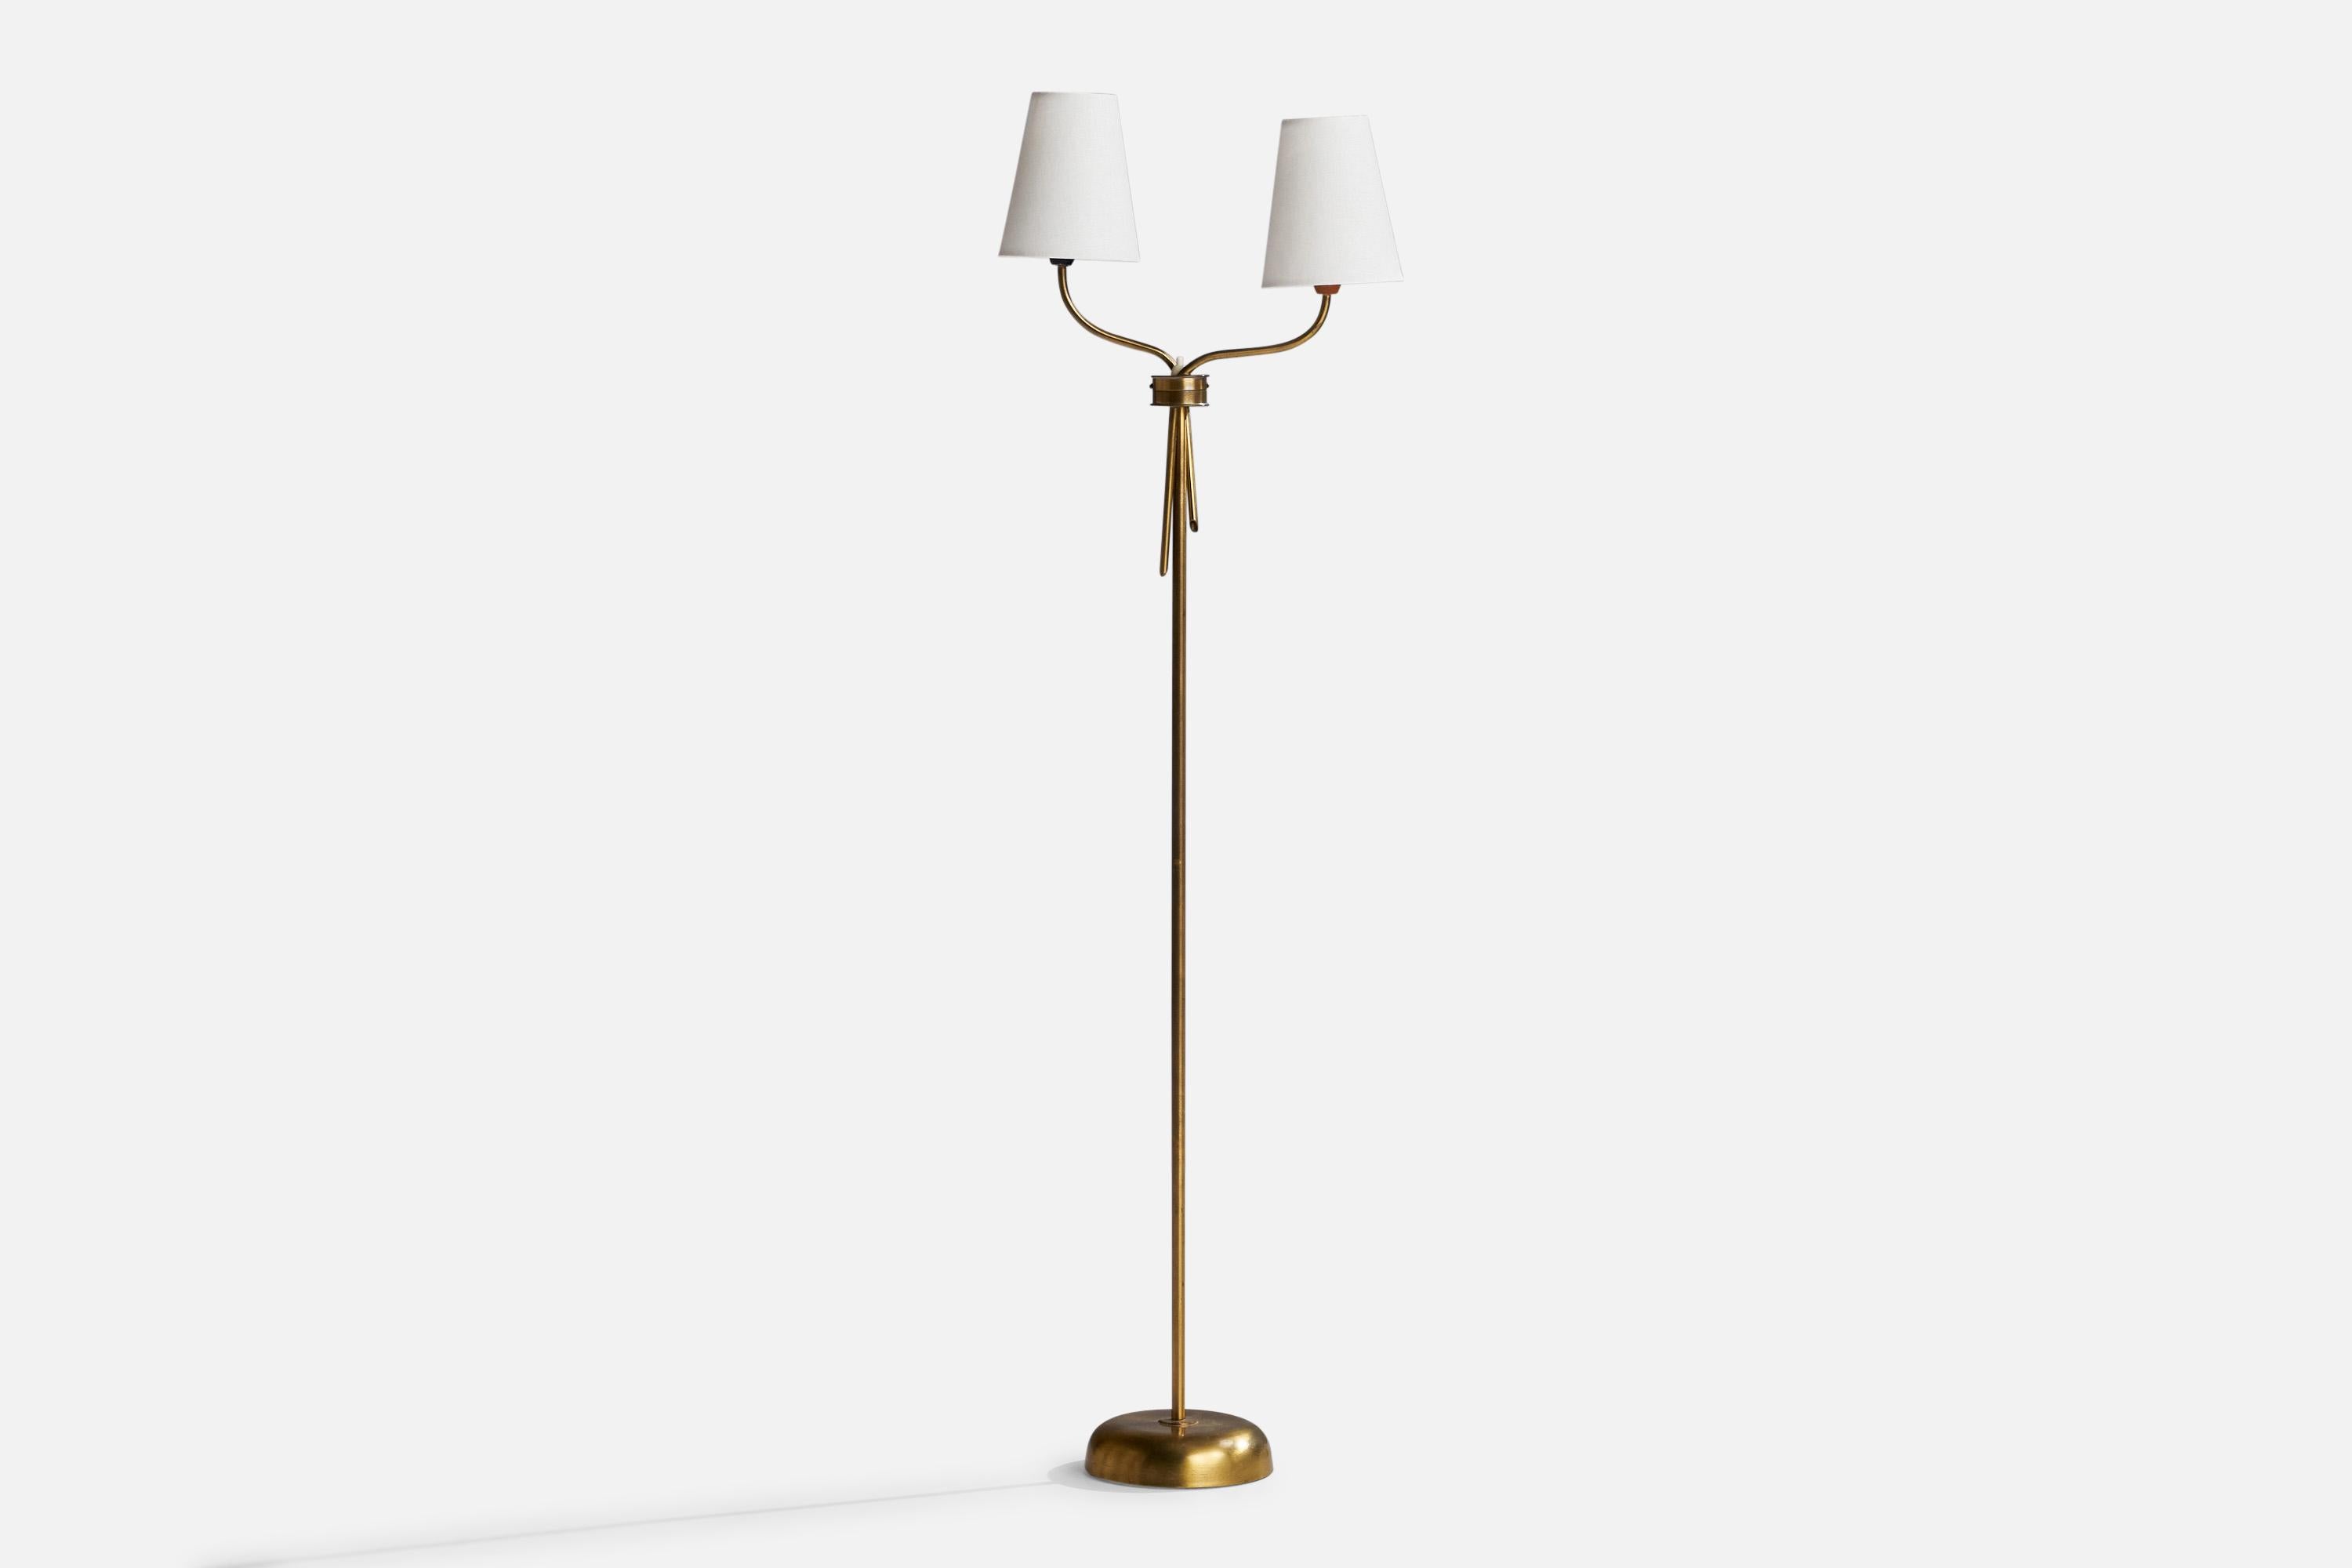 Lampadaire à deux bras en laiton et tissu blanc, conçu et produit en Suède, années 1940.

Dimensions de la lampe (pouces) : 47